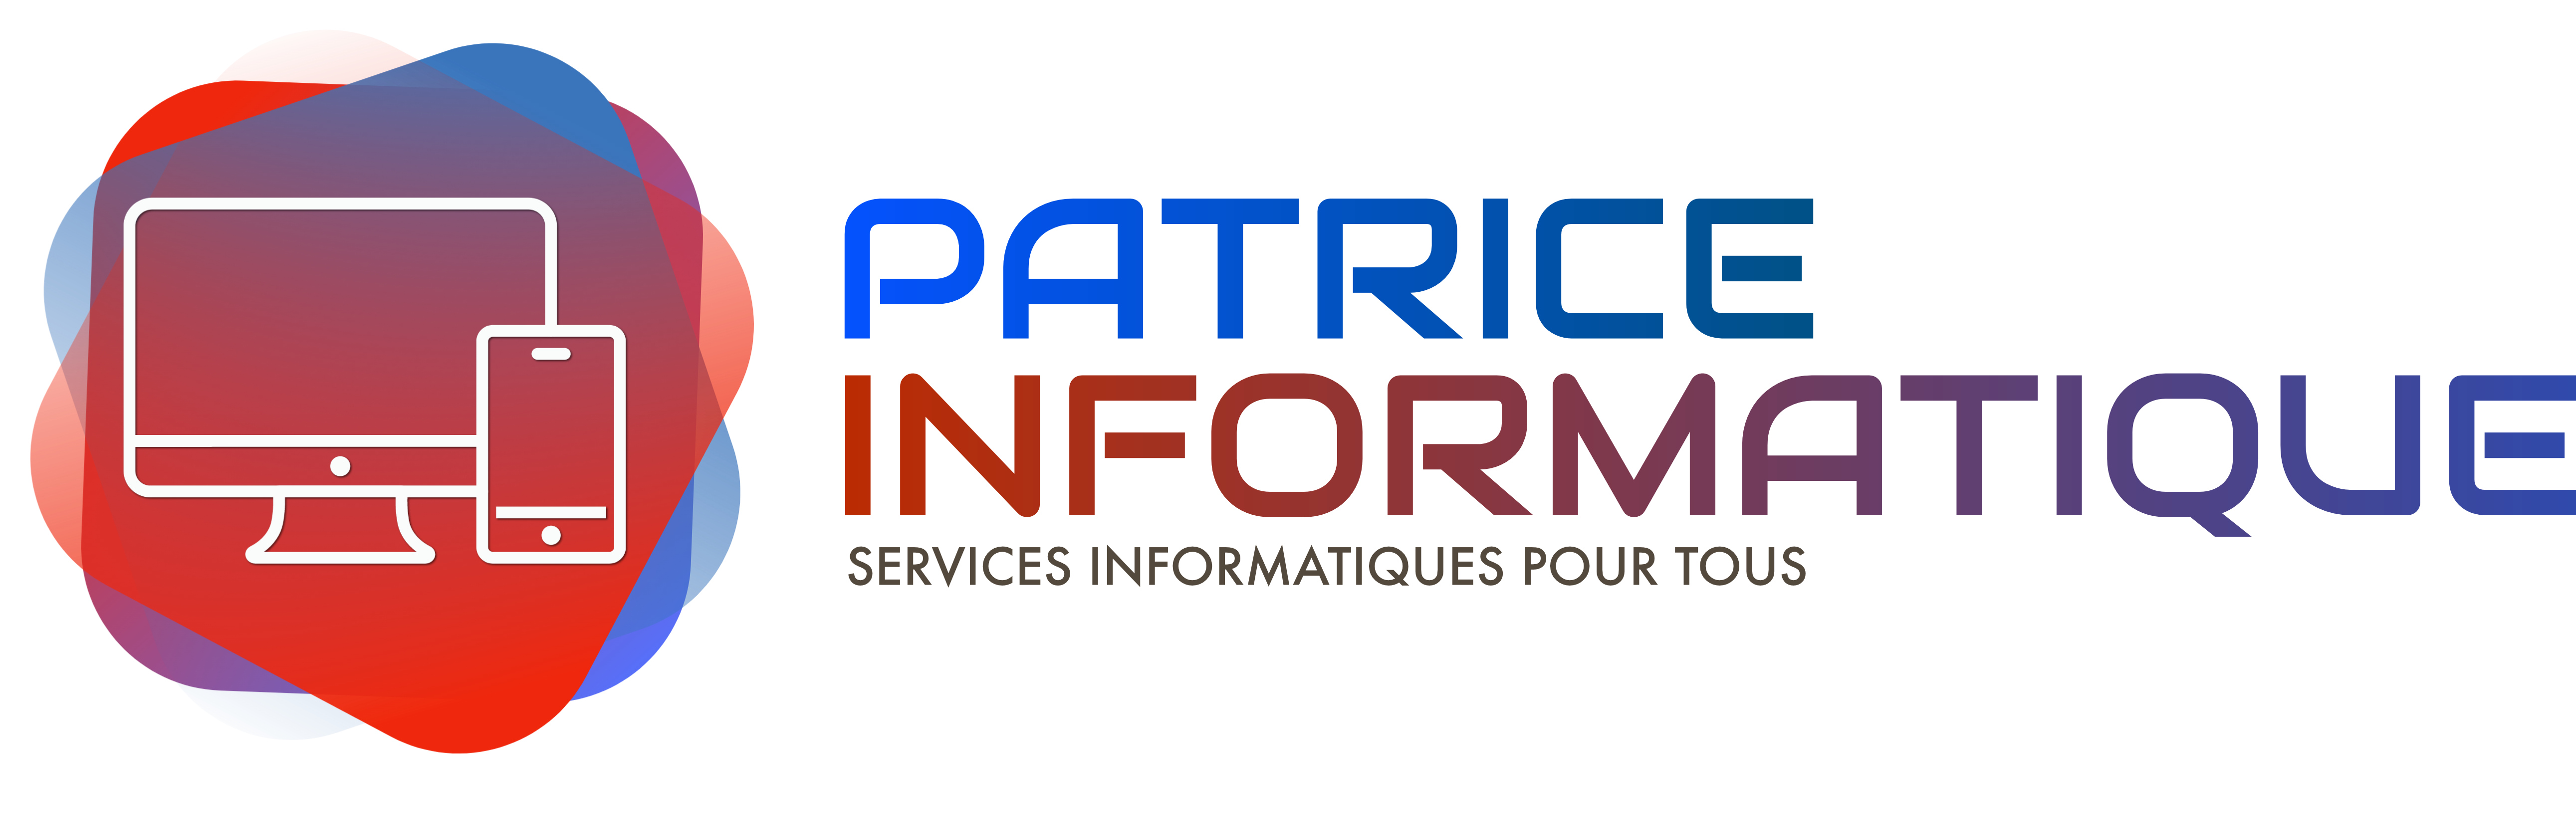 Site hébergé, créé et maintenu par Patrice Informatique Ajaccio